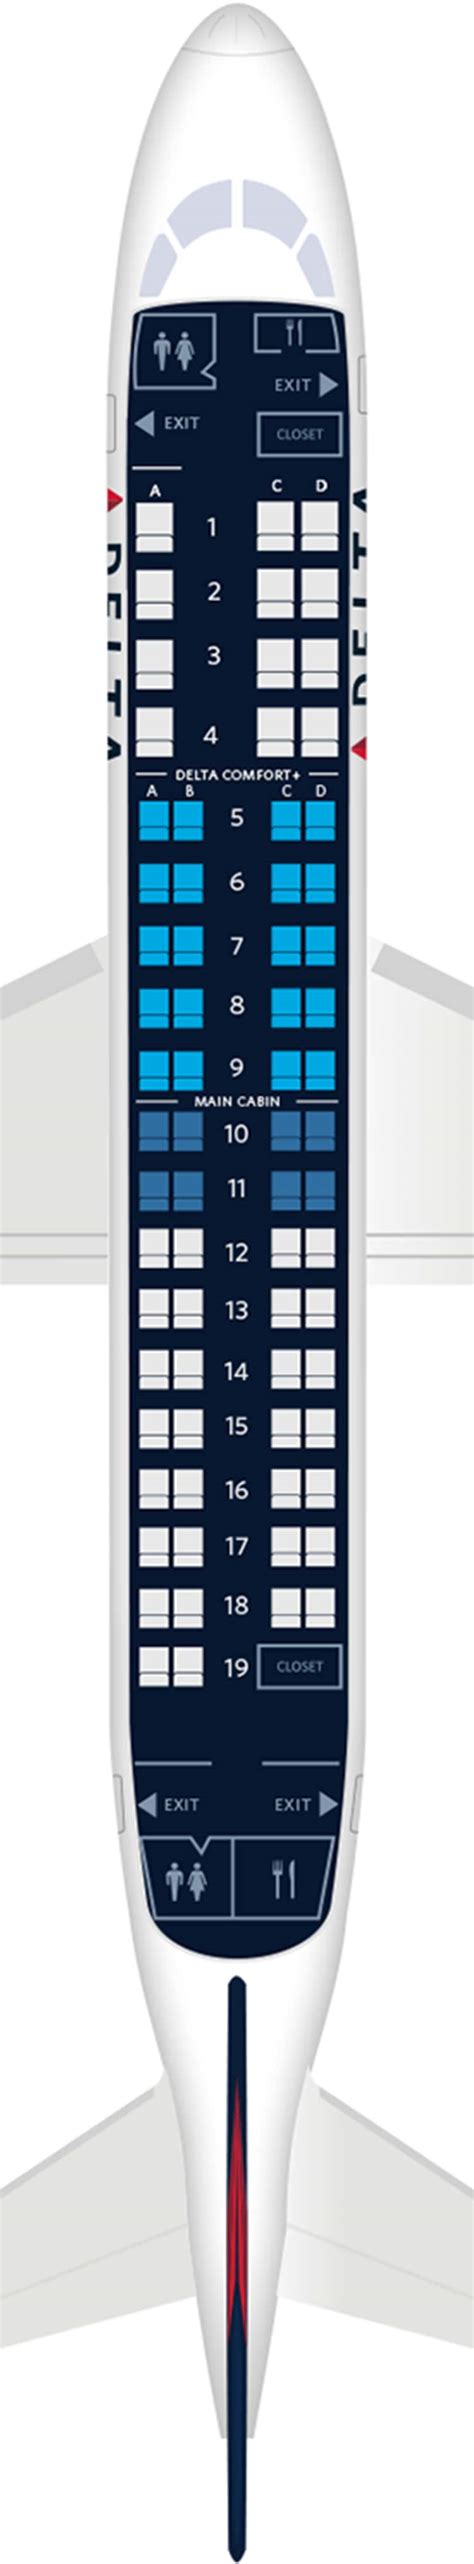 embraer erj  seat maps specs amenities delta air lines